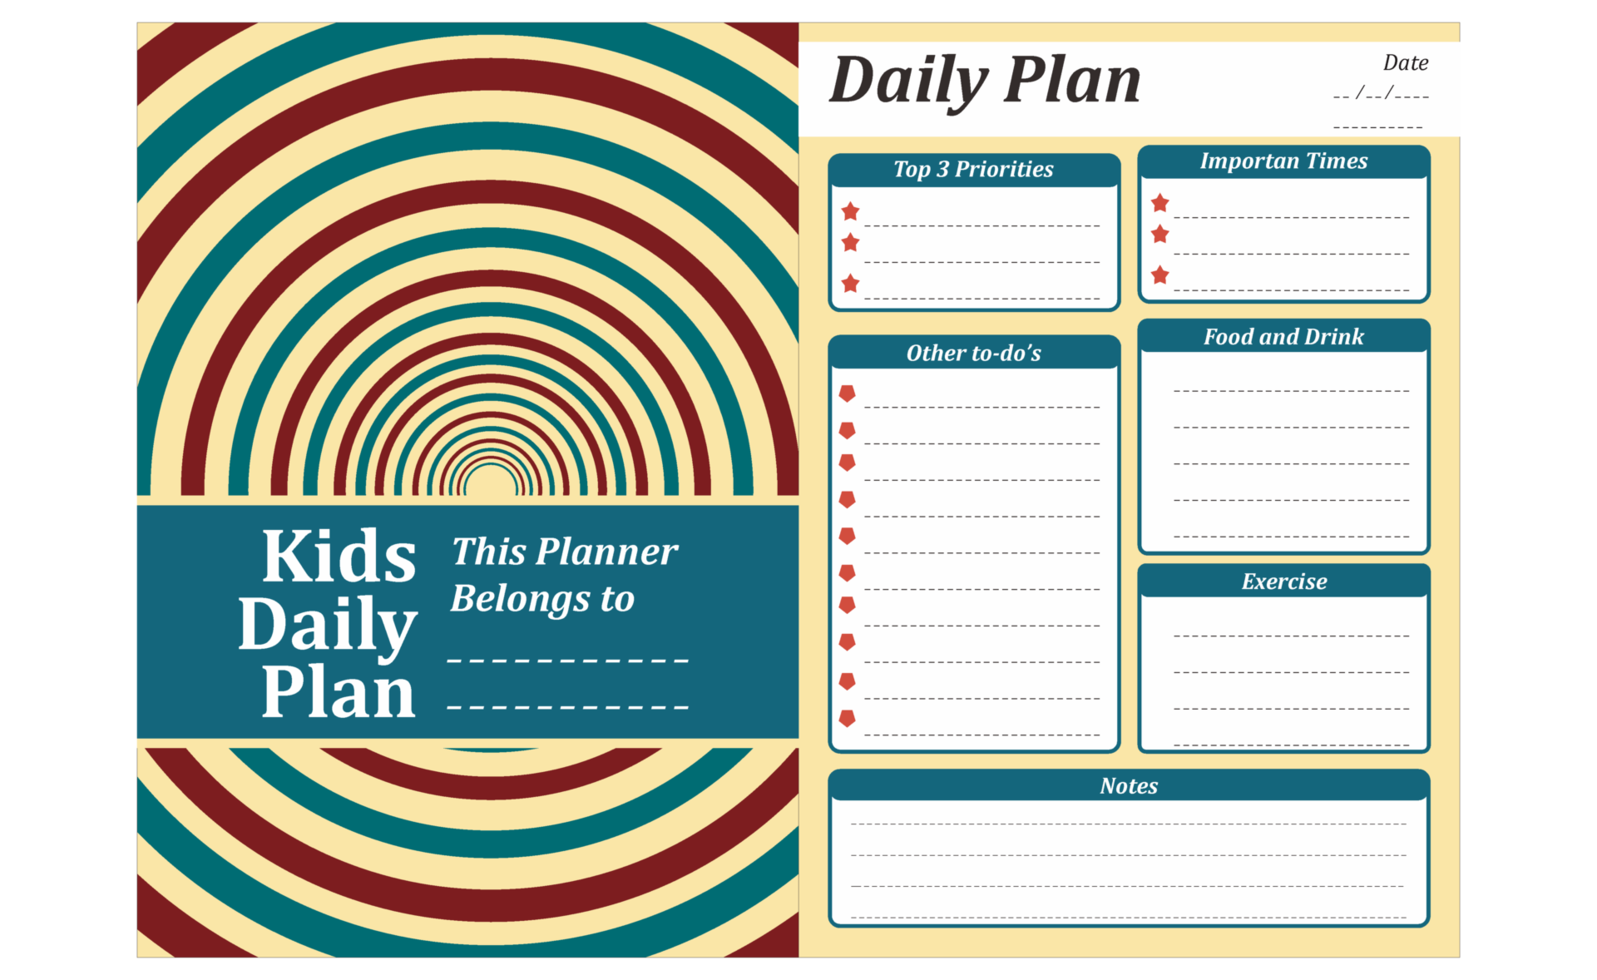 diseño de plan diario para niños con tema vintage retro de onda circular png